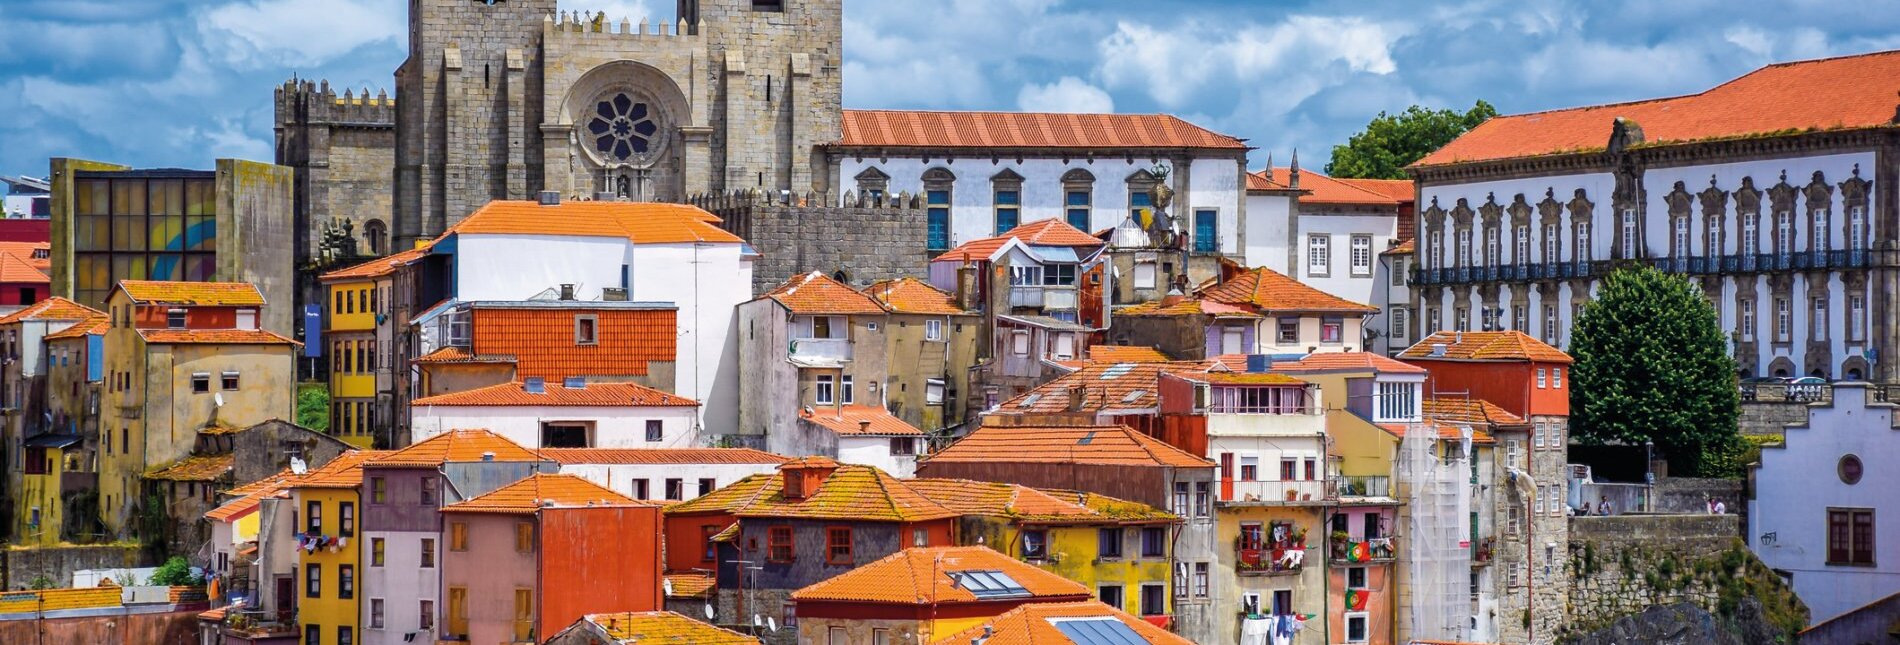 Blick auf die Altstadt von Porto mit Kathedrale